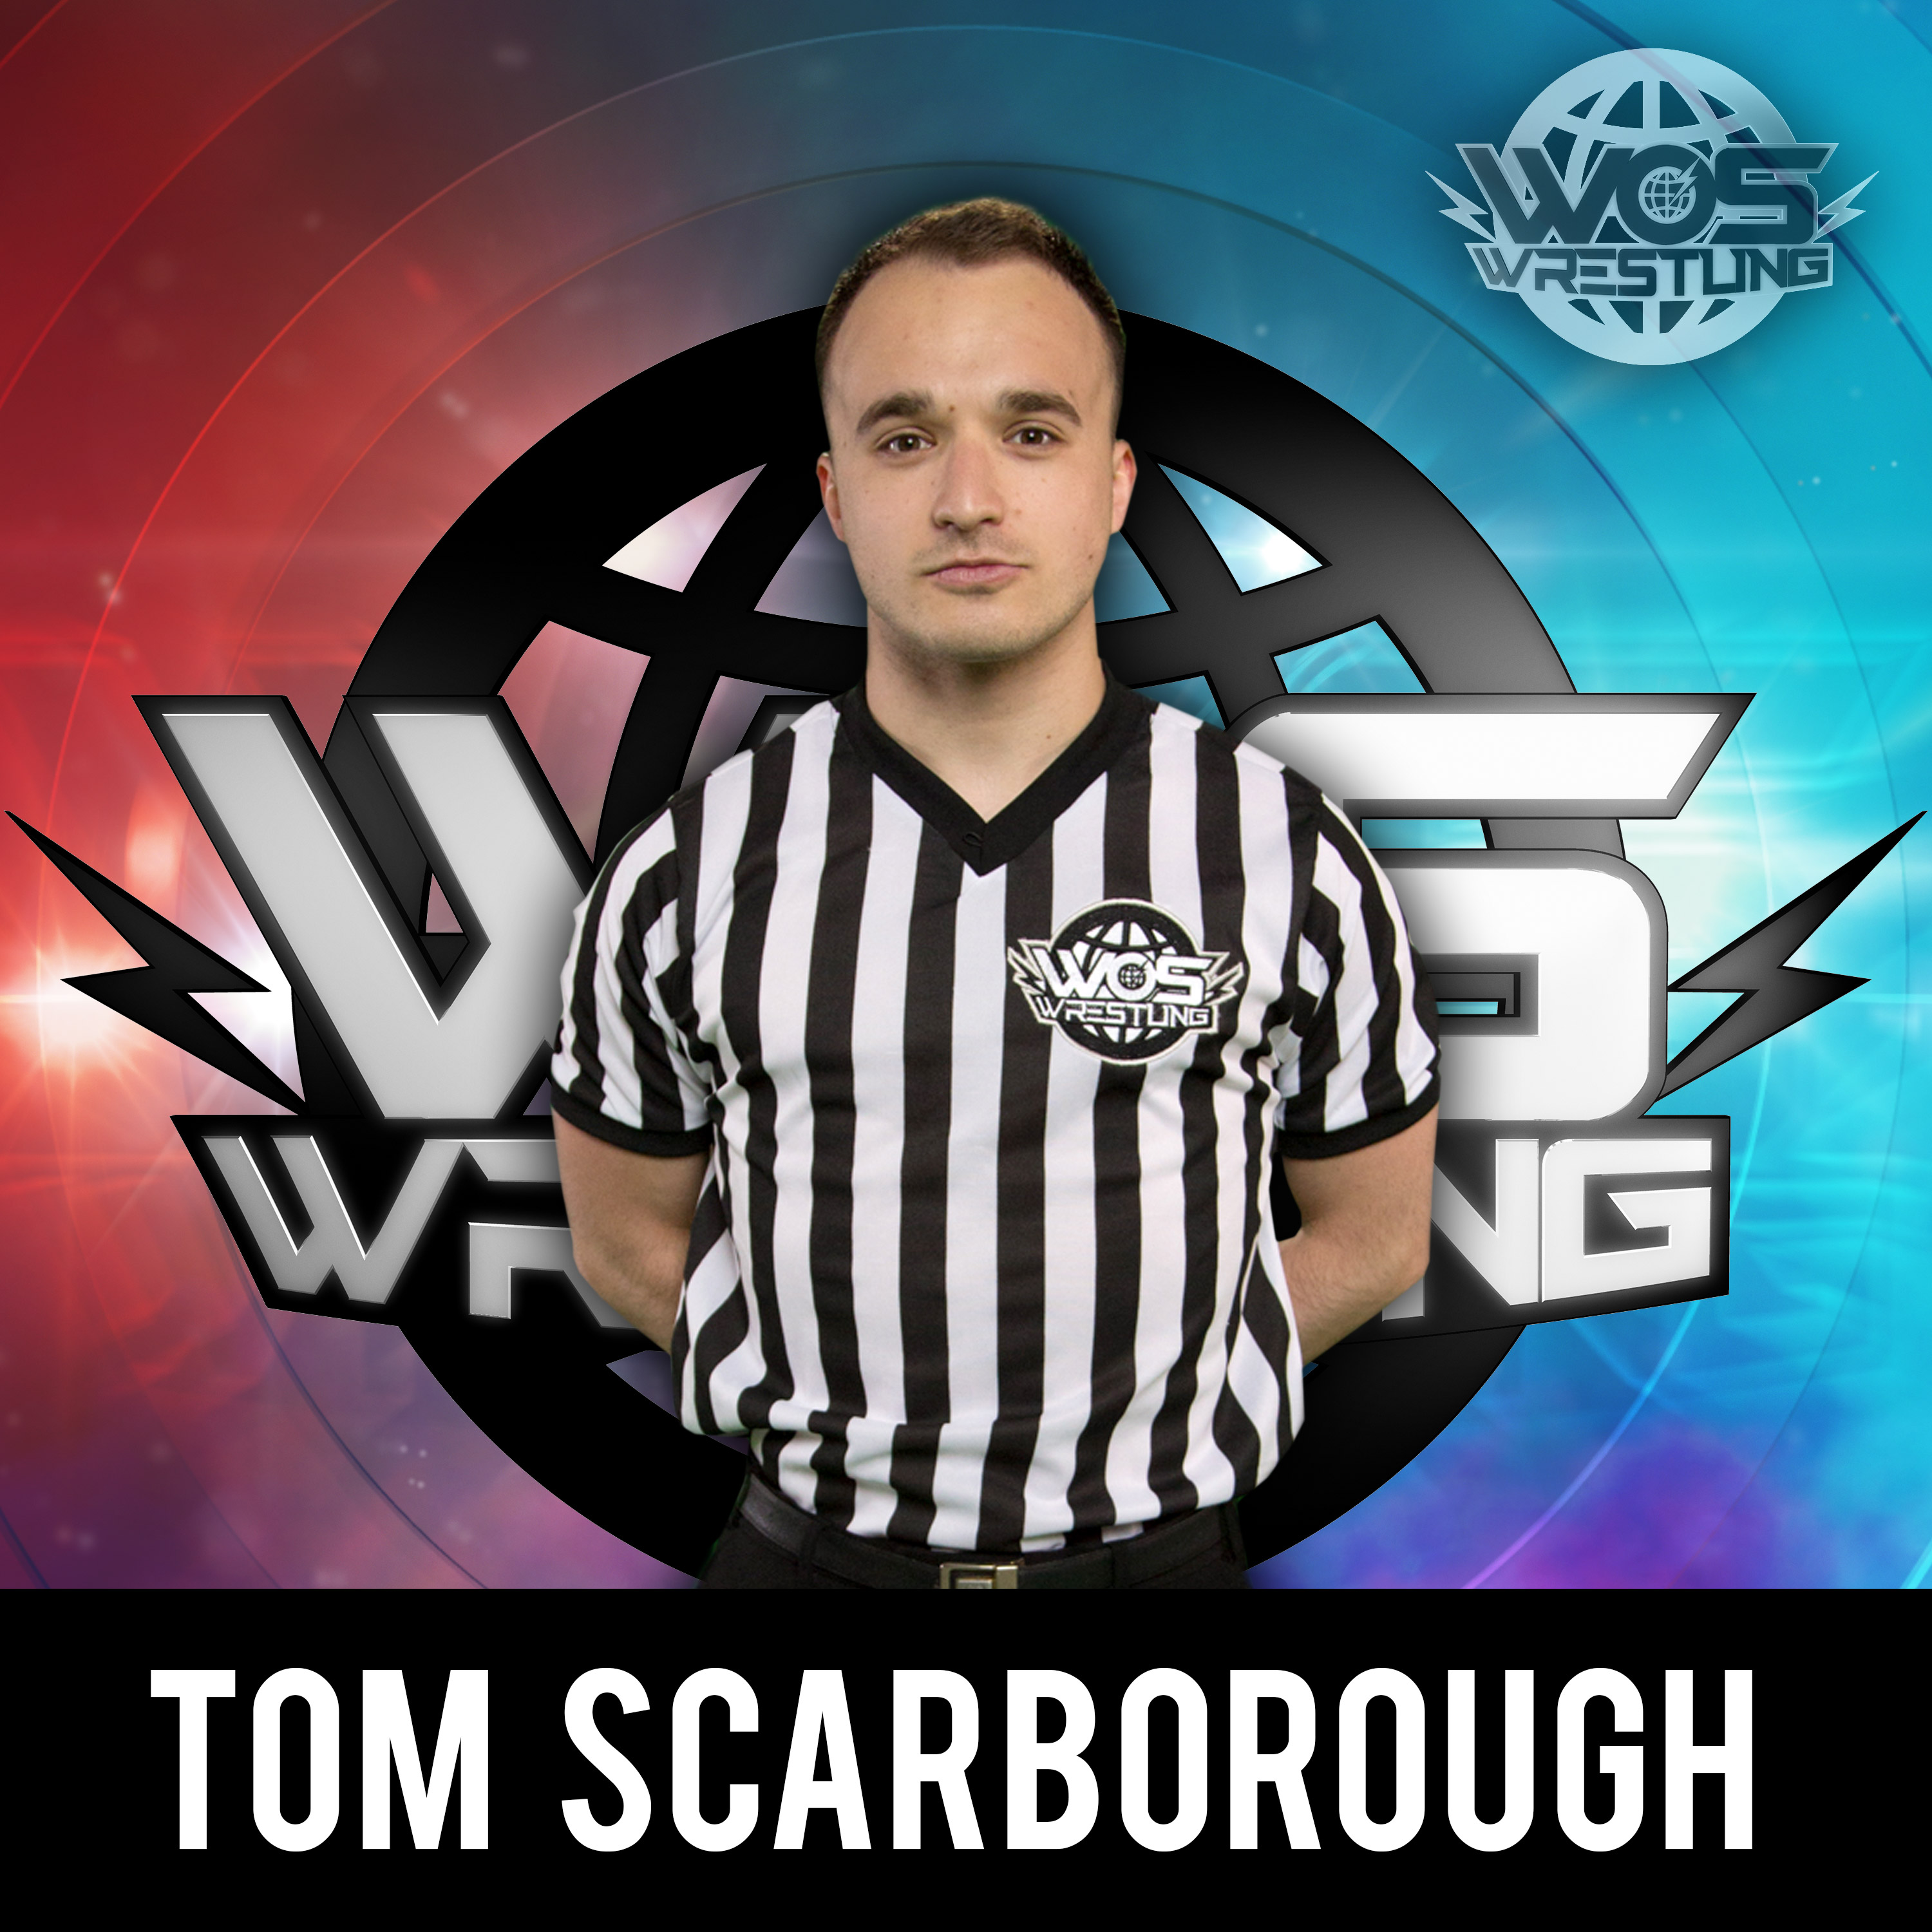 Tom Scarborough